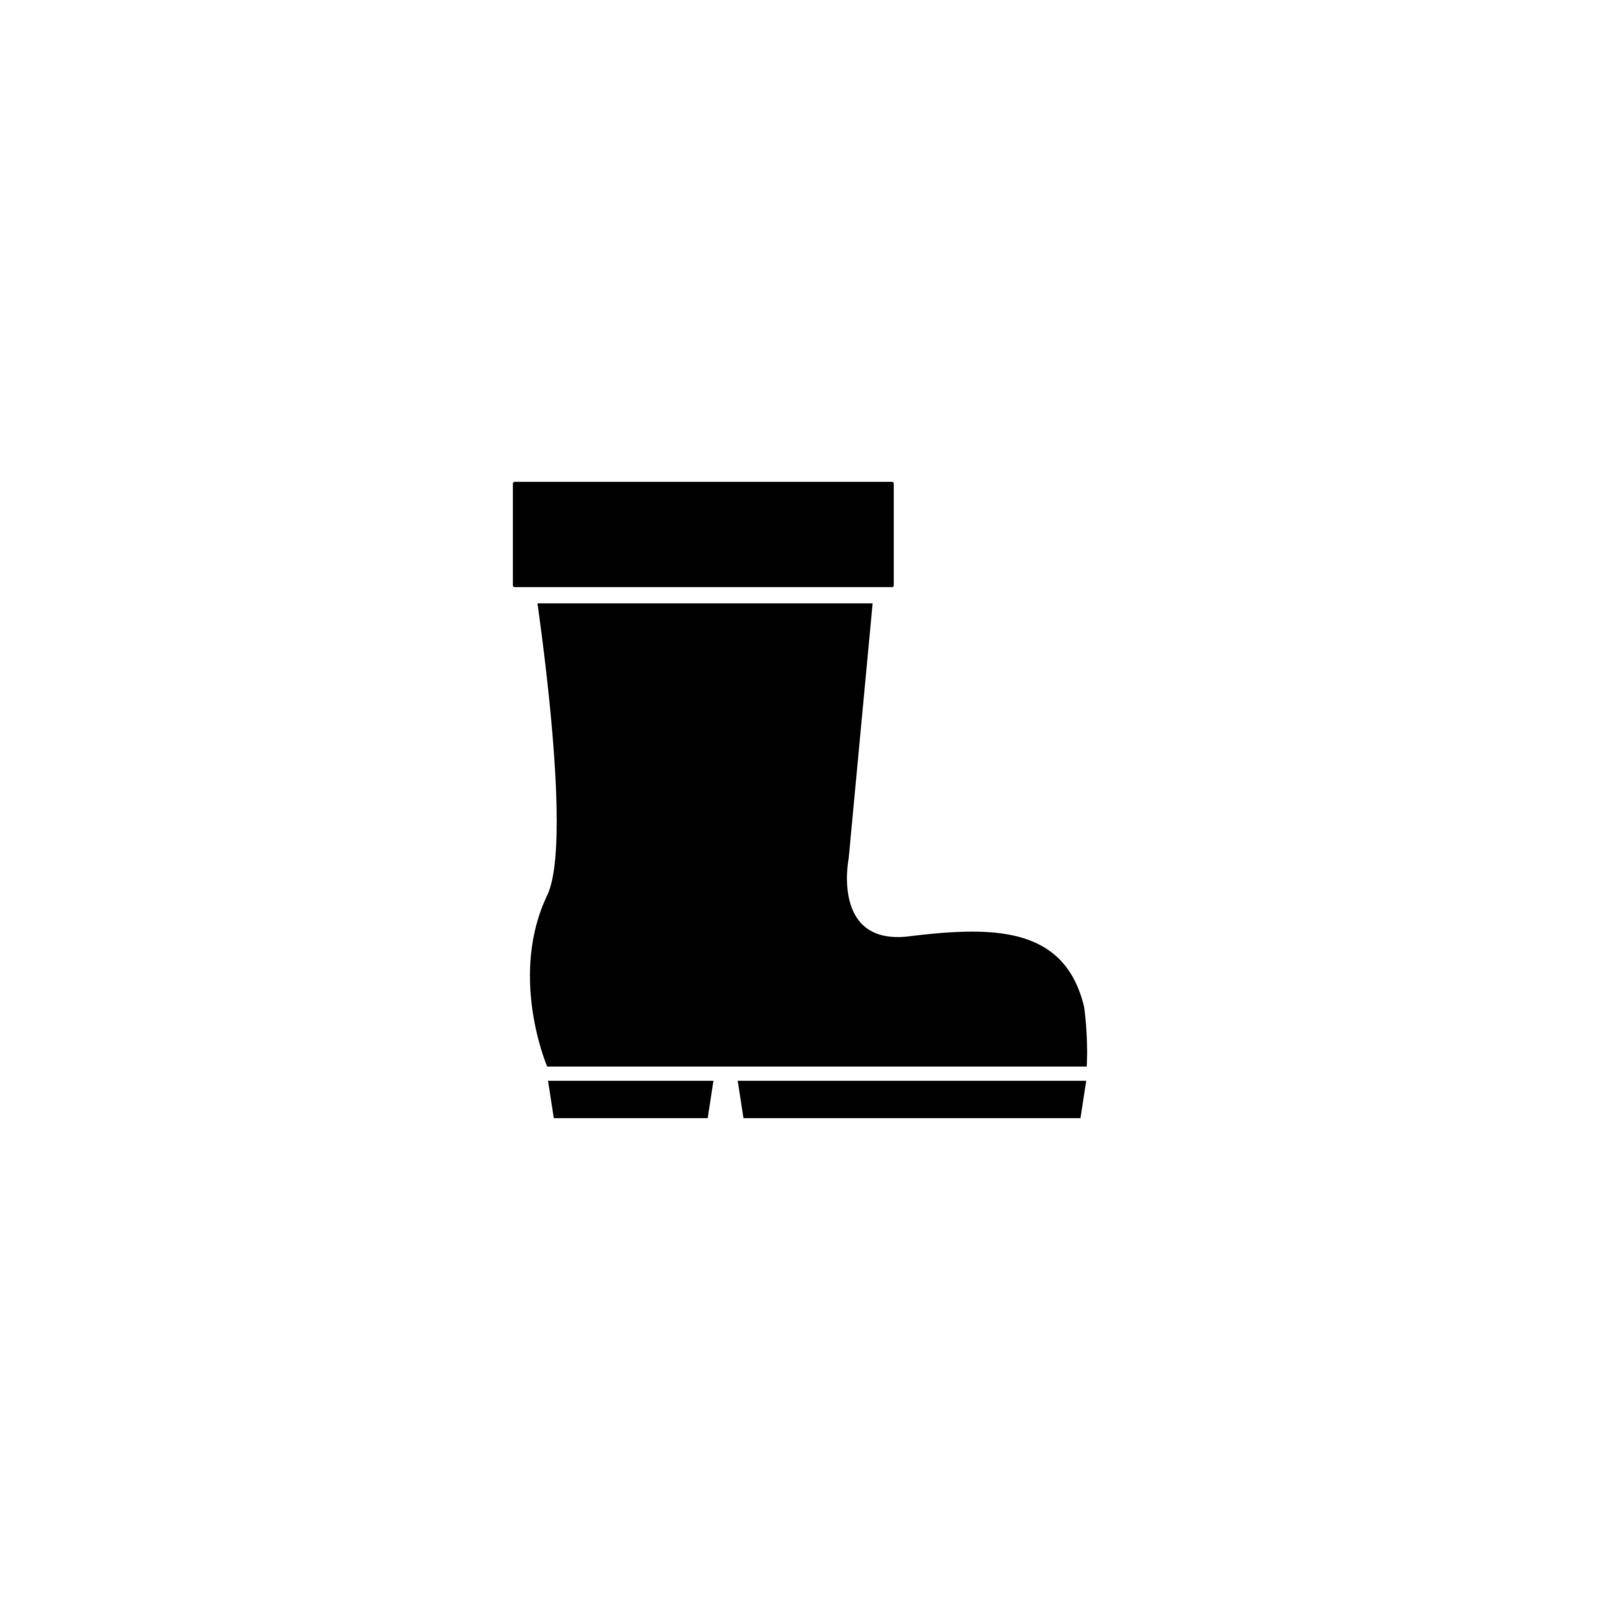 Wellington Boot, Rubber Shoe Footwear Flat Vector Icon by sfinks